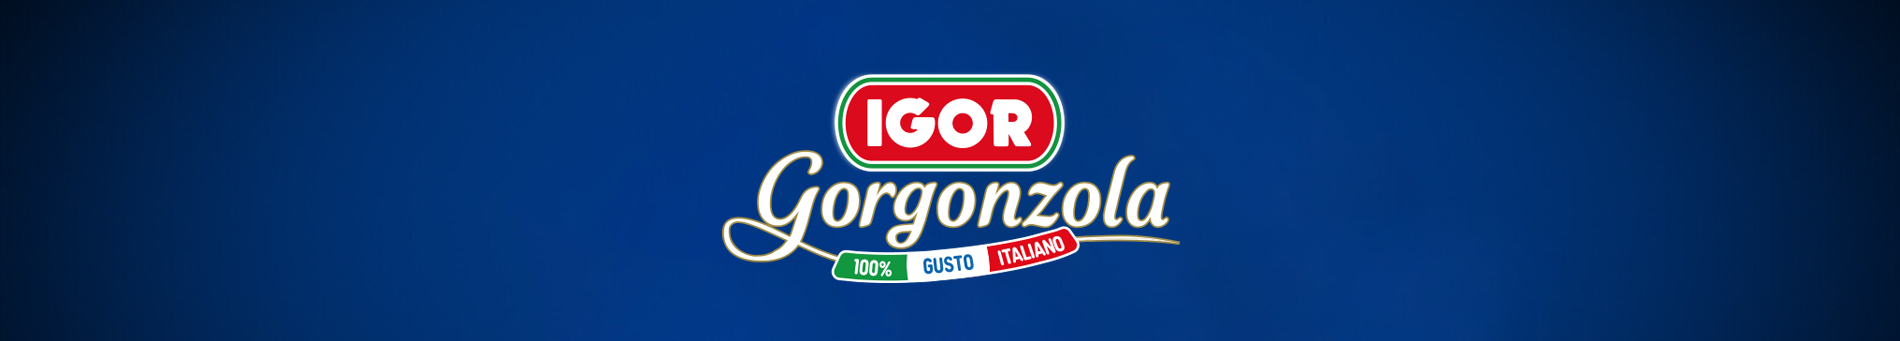 IGOR Gorgonzola Novara